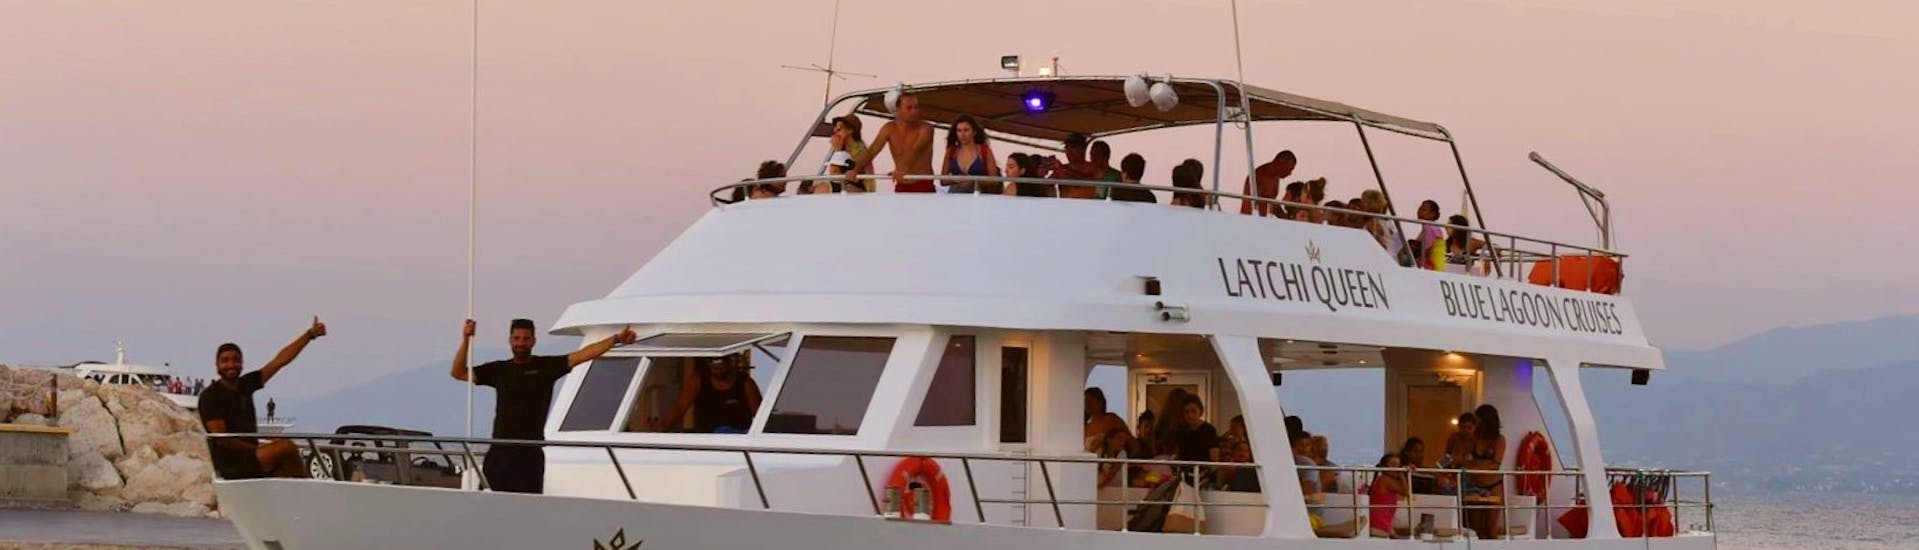 La barca del giro in barca al tramonto alla Laguna Blu da Latchi con Latchi Queen Cyprus.